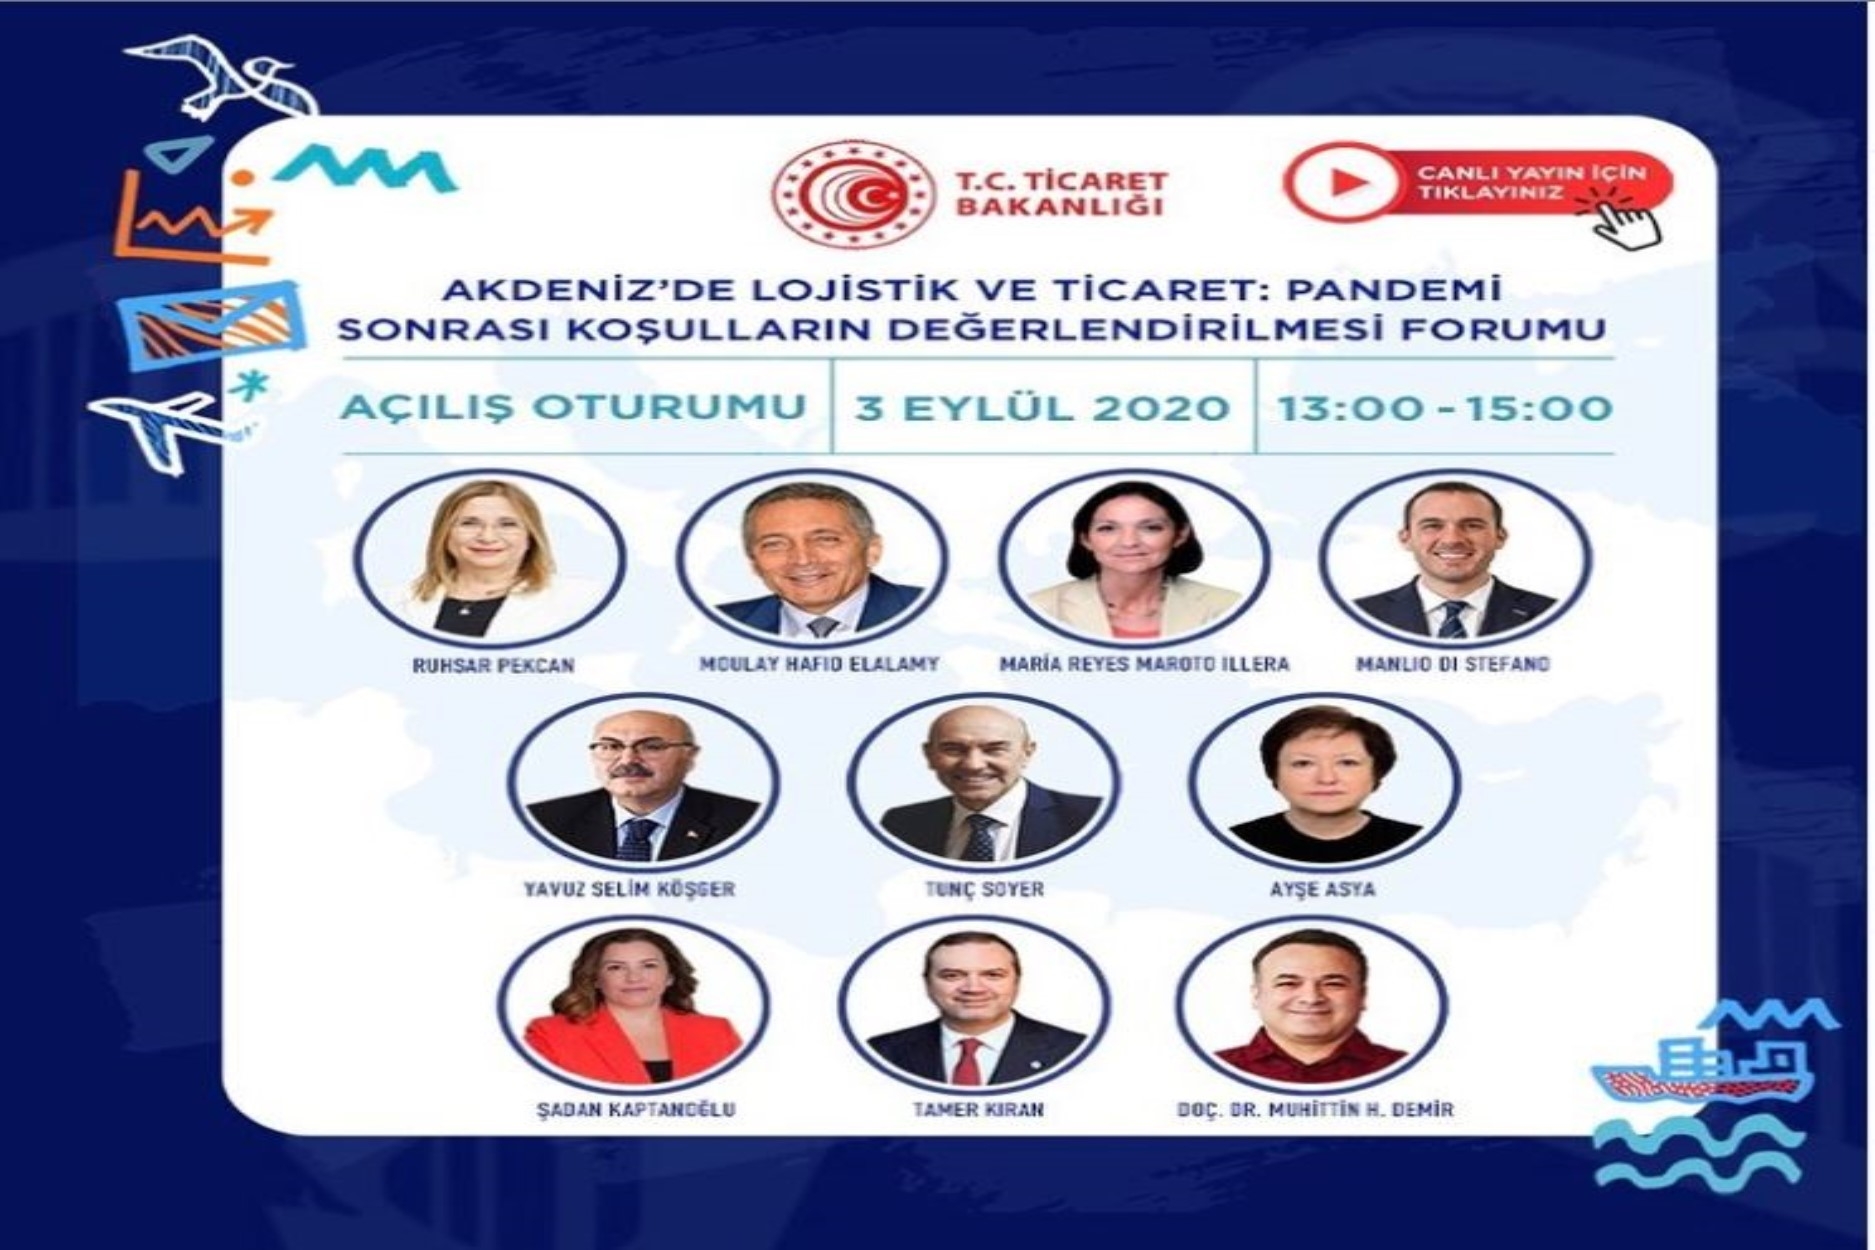 İEÜ Lojistik Yönetimi Bölüm Başkanı Doç. Dr. Muhittin H. Demir, 2020 İEF İzmir İş Günleri'nde "Akdeniz'de Ticaret ve Lojistik" konulu bir sunum gerçekleştirecek